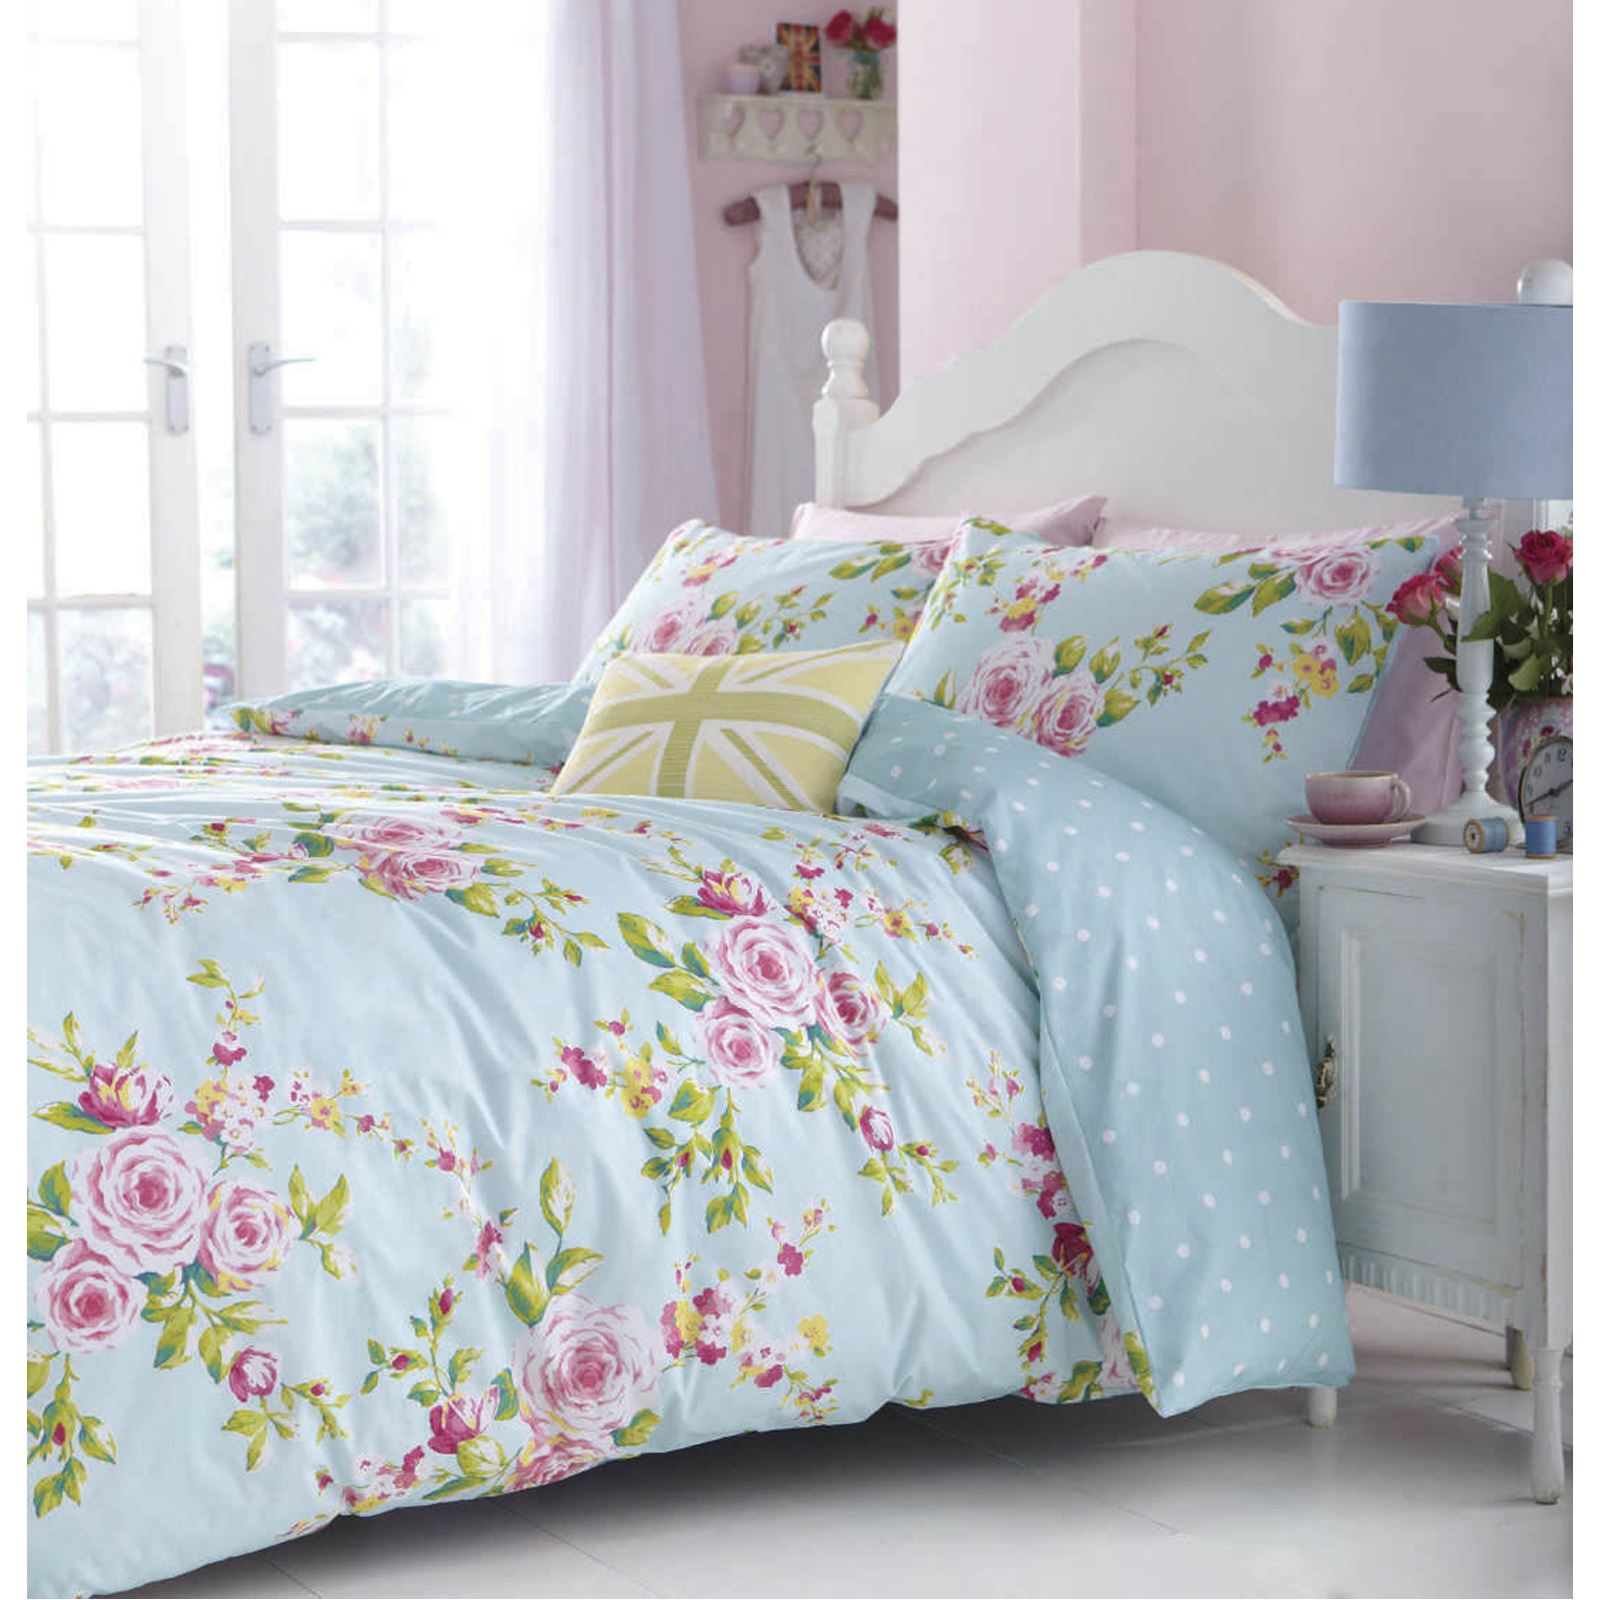 papier peint tottenham pour les chambres,drap de lit,rose,lit,meubles,textile